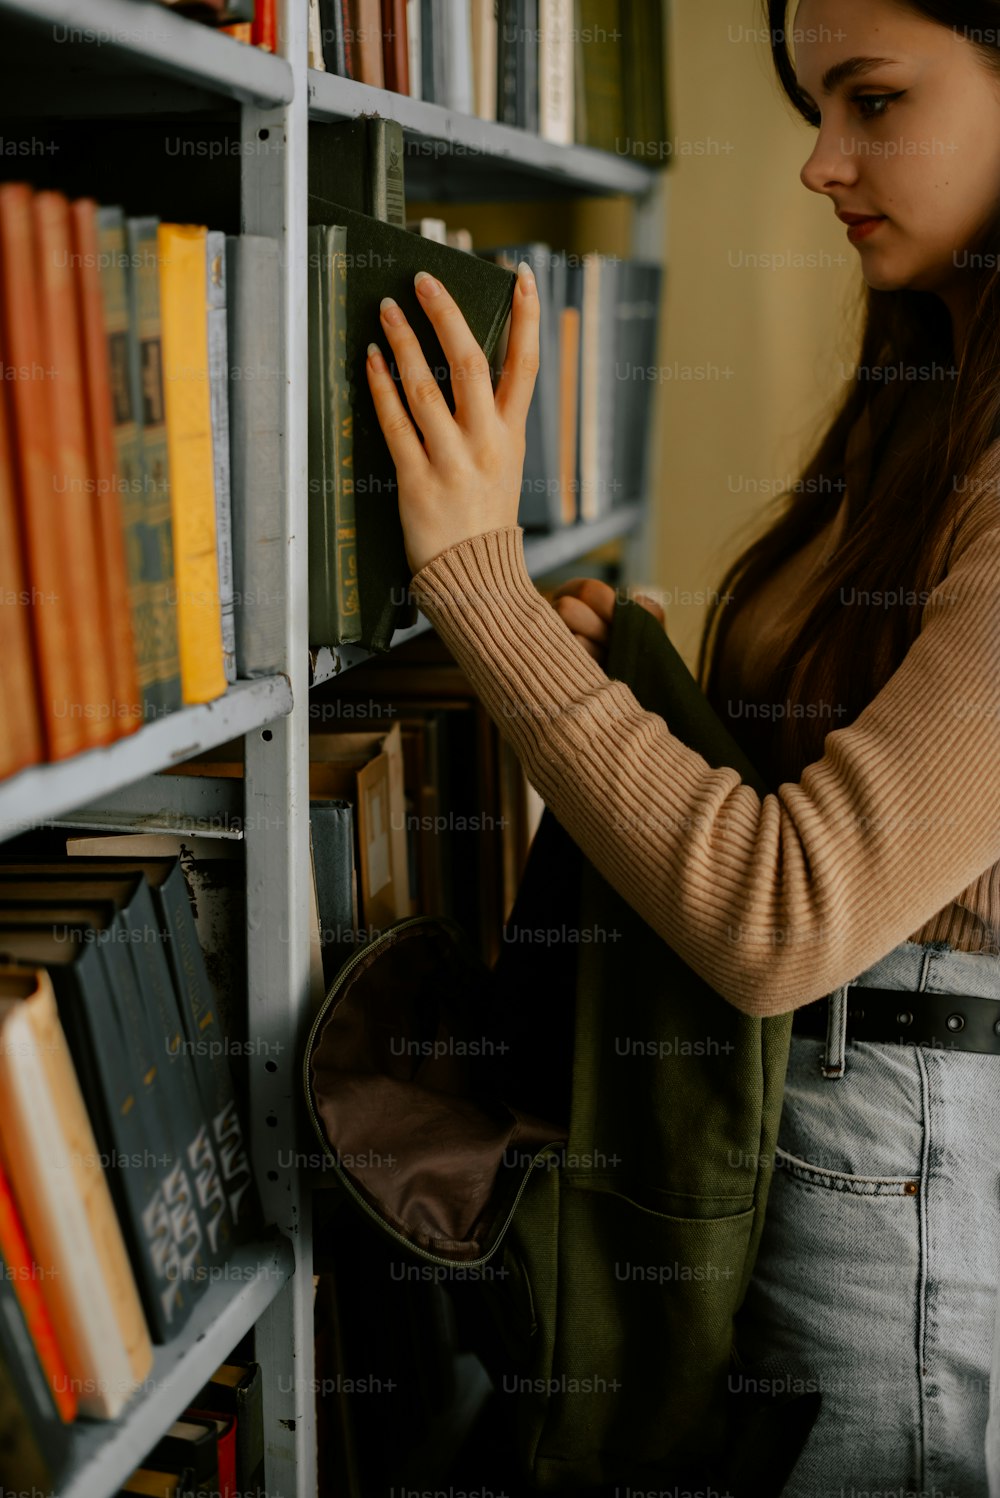 Une femme regarde des livres sur une étagère